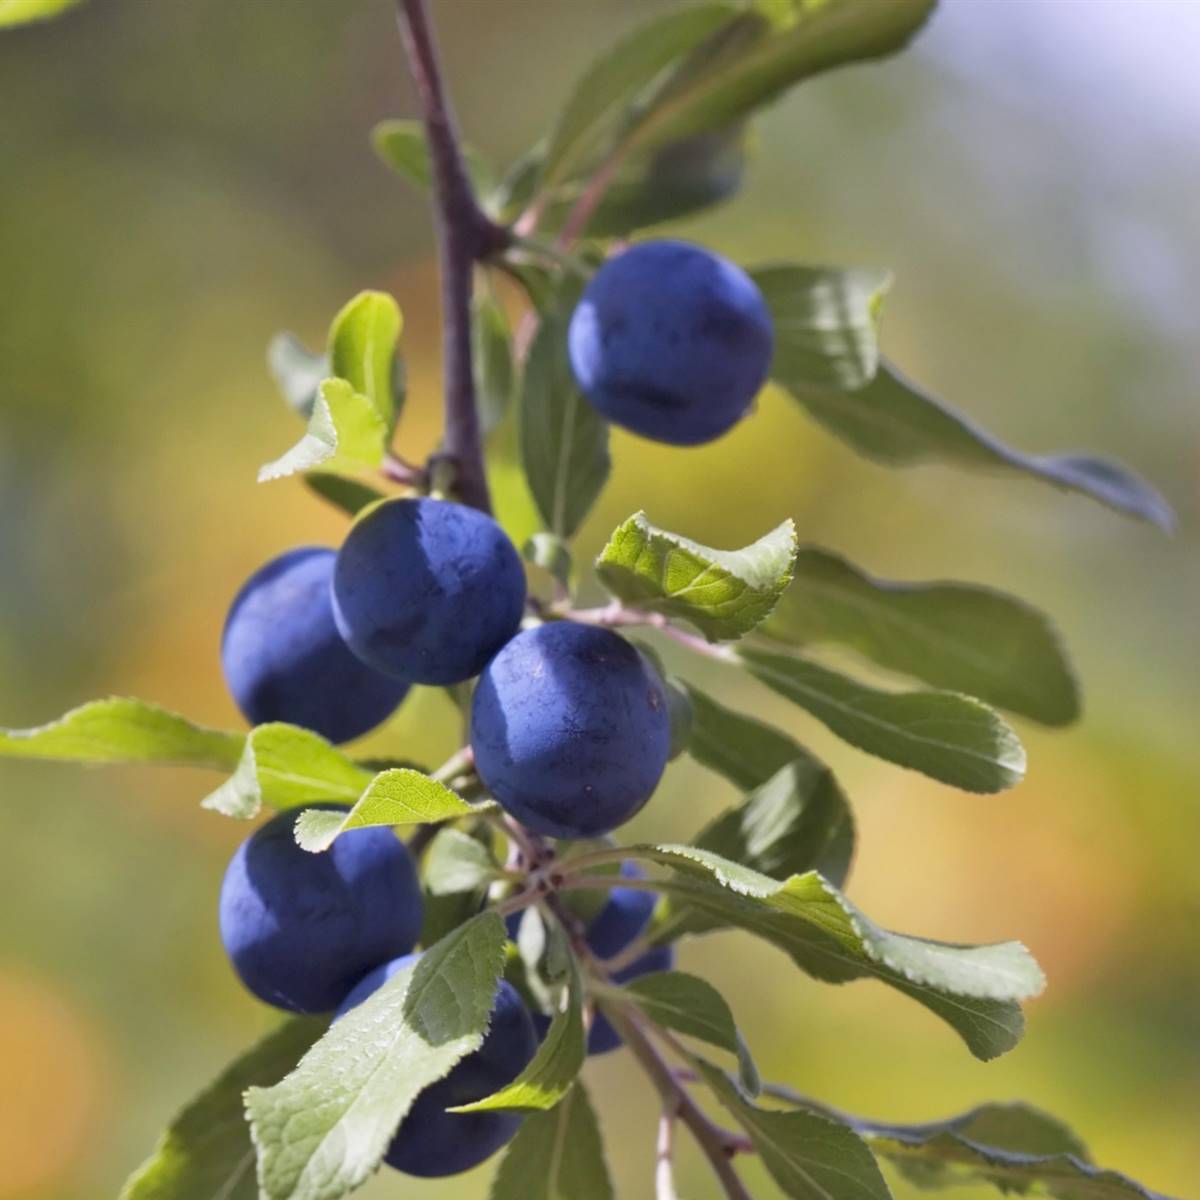 Frutas del bosque: Propiedades saludables y de temporada